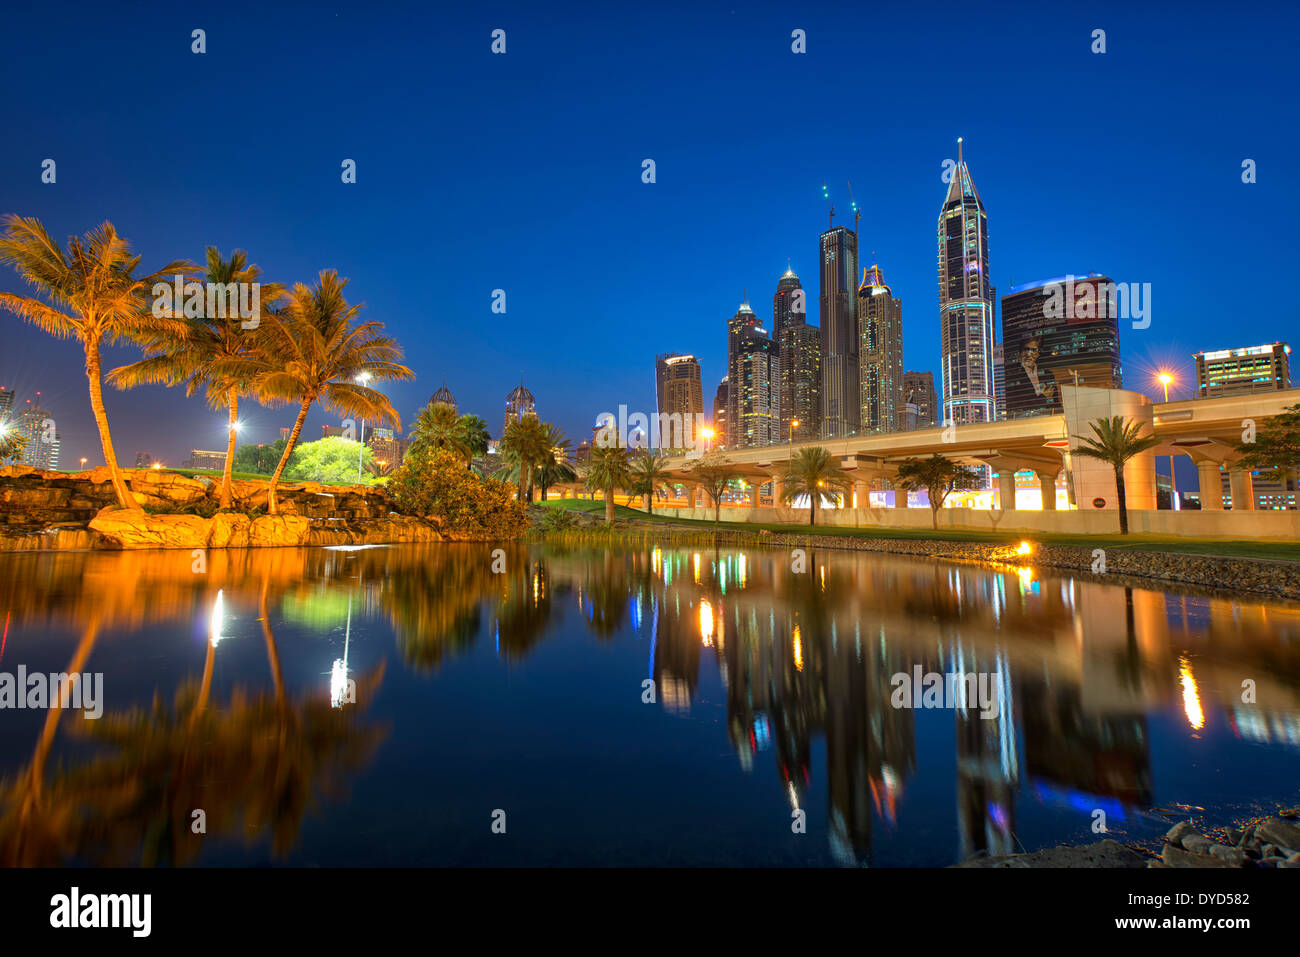 Immagine di Emirates Golf Club in Dubai, UAE (Dubai Marina in background) Foto Stock